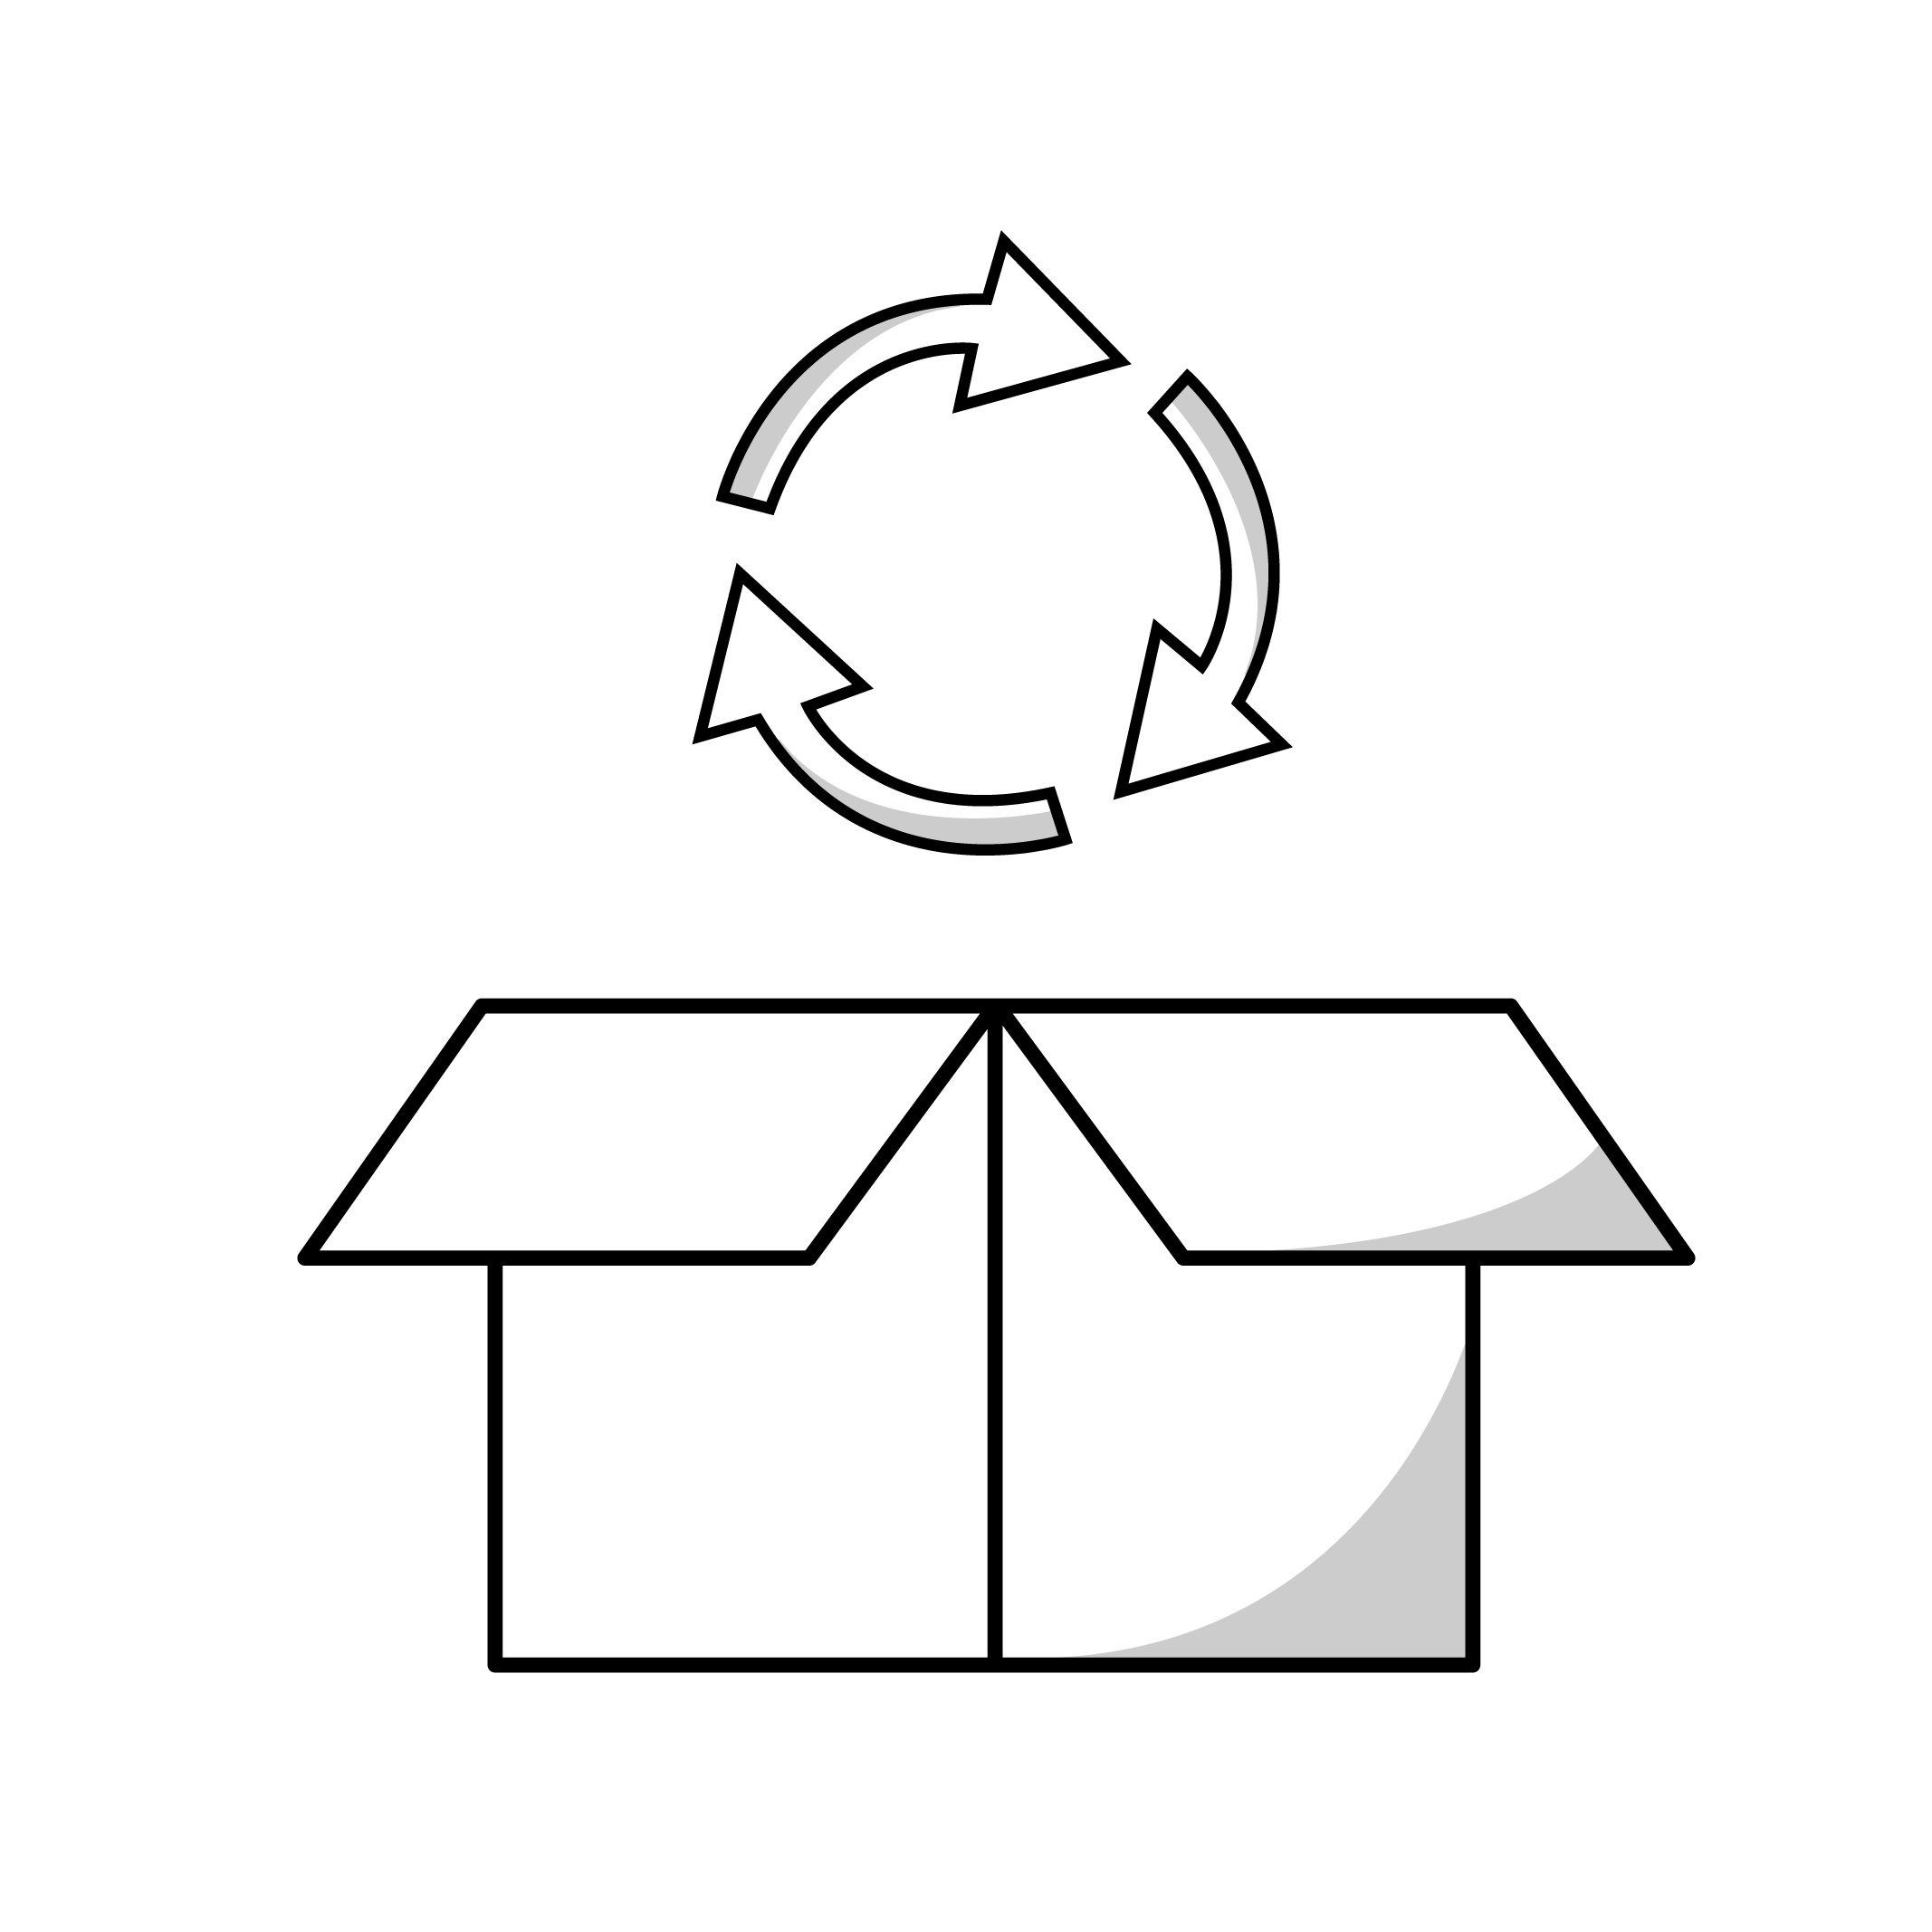 pictogramme noir d'une boite avec haut dessus des flèches qui tournent en rond